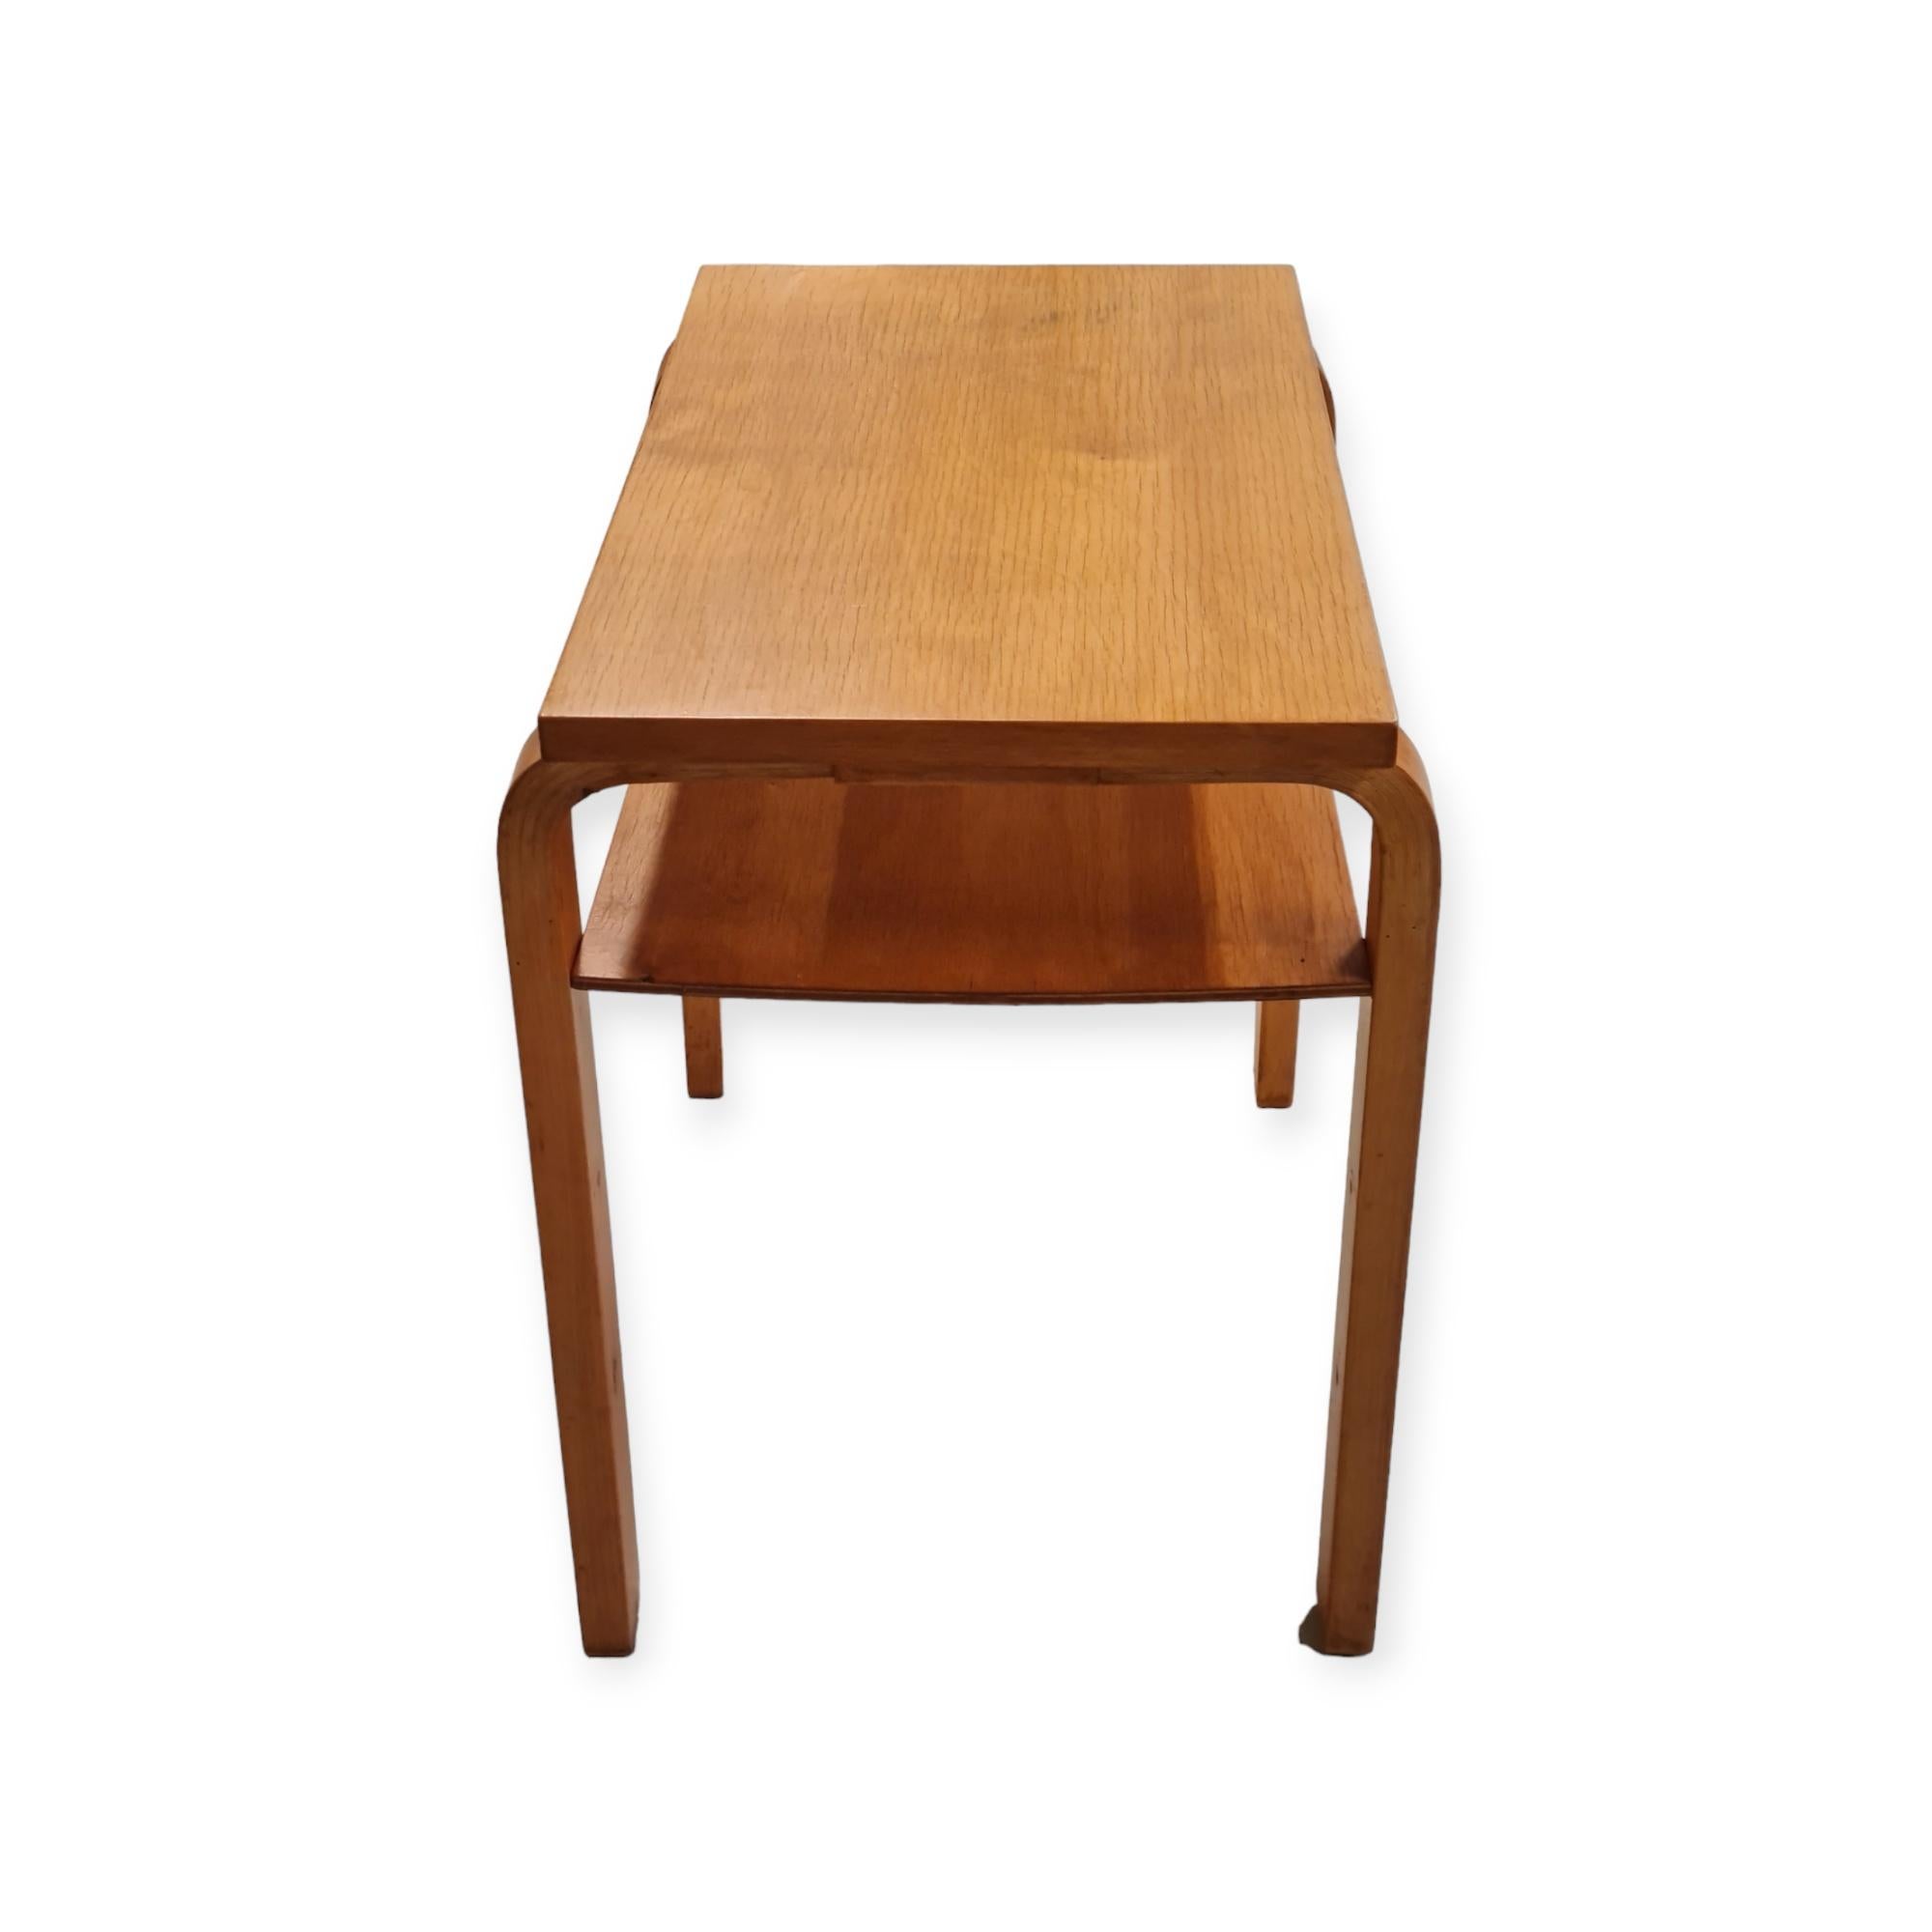 Scandinavian Modern Alvar Aalto Side Table Model A 86 for Artek, 1930s For Sale